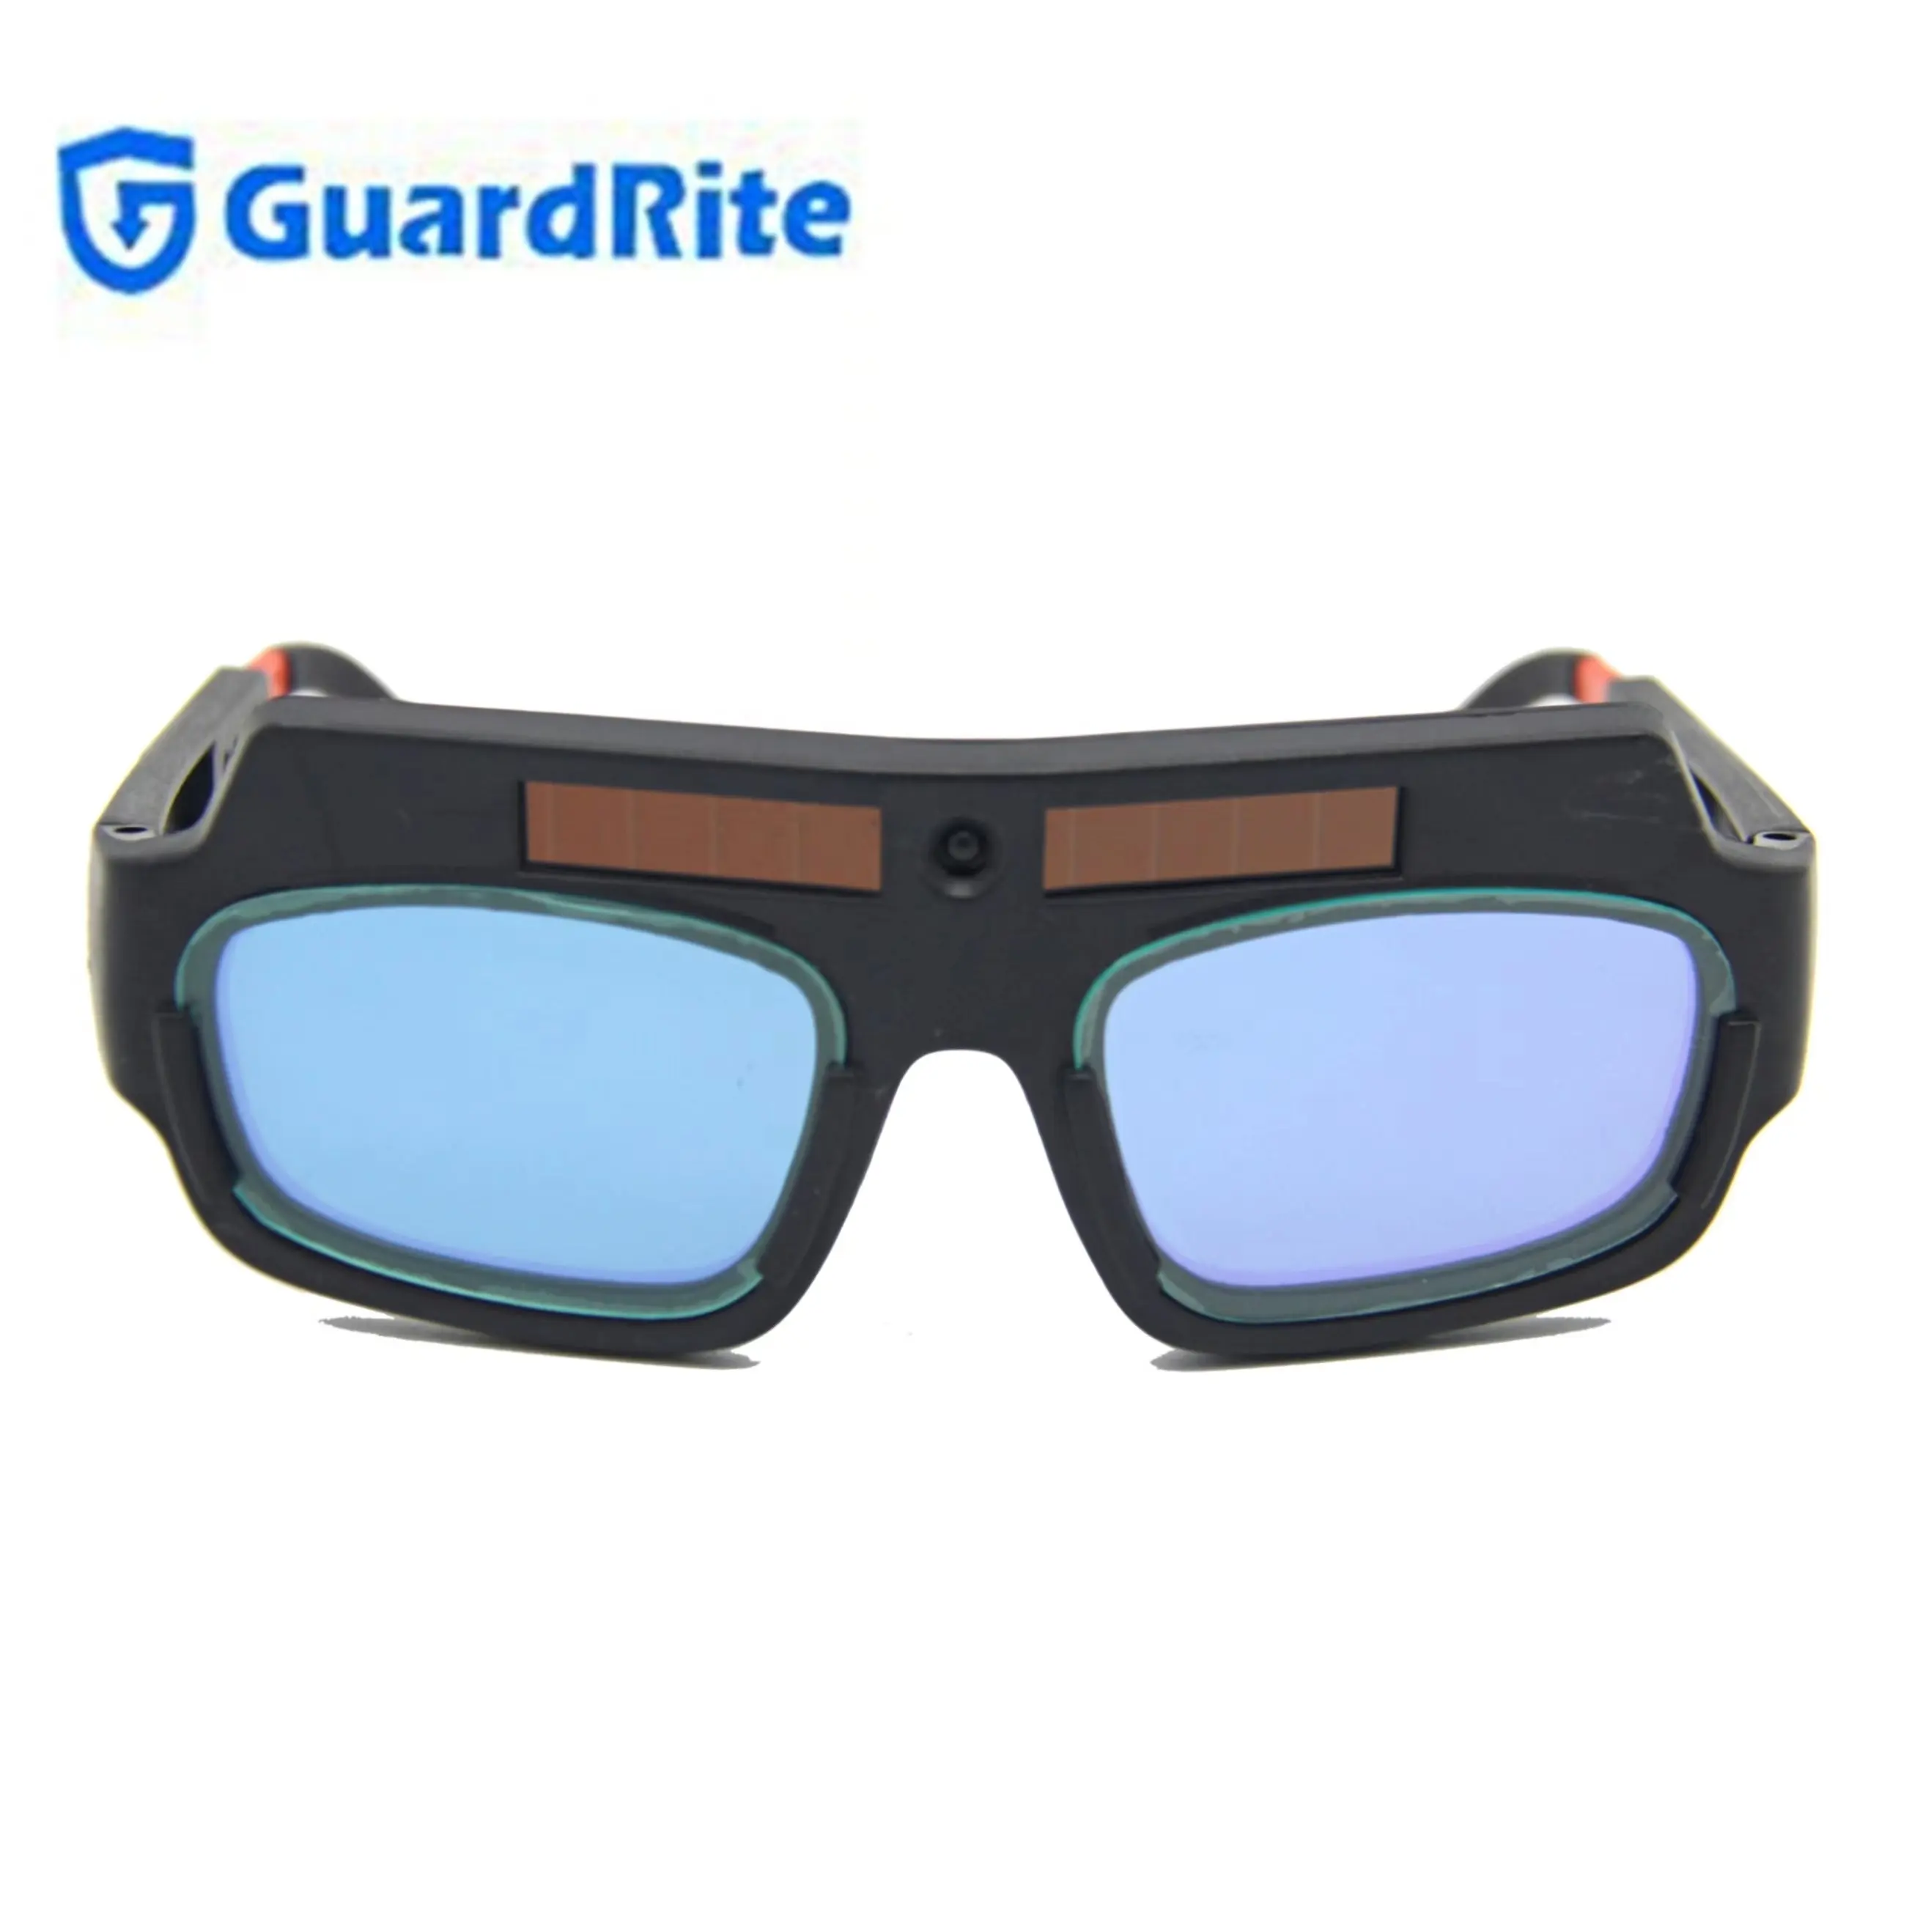 GuardRite marka güneş otomatik kararan kaynak gözlüğü kaynakçılar için güvenlik gözlükleri